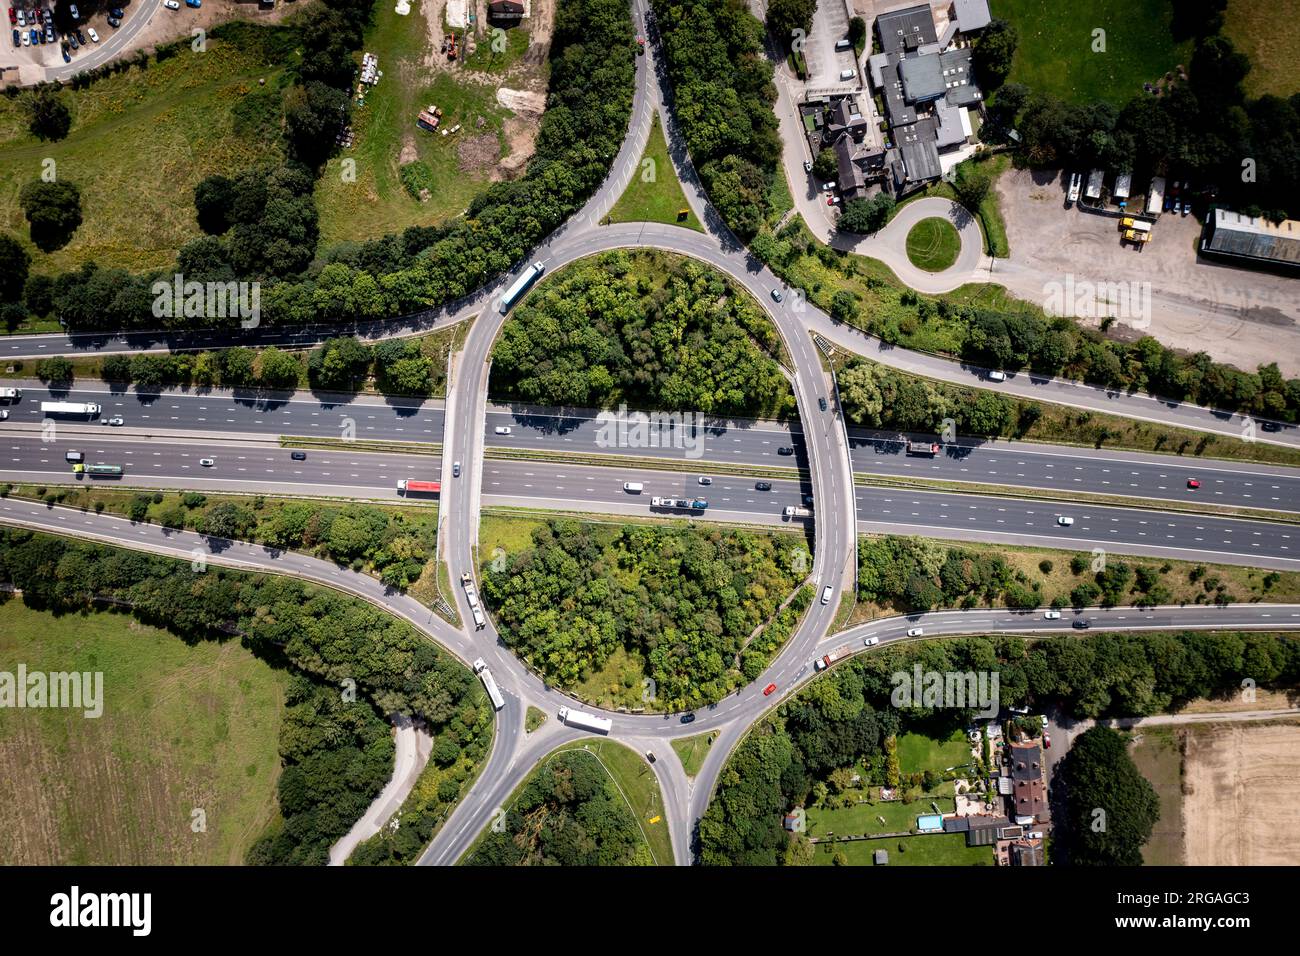 Luftaufnahme direkt über einer geschäftigen Straßenkreuzung auf einer britischen Autobahn mit Überbrückung und Zufahrtsstraßen in der britischen Landschaft Stockfoto